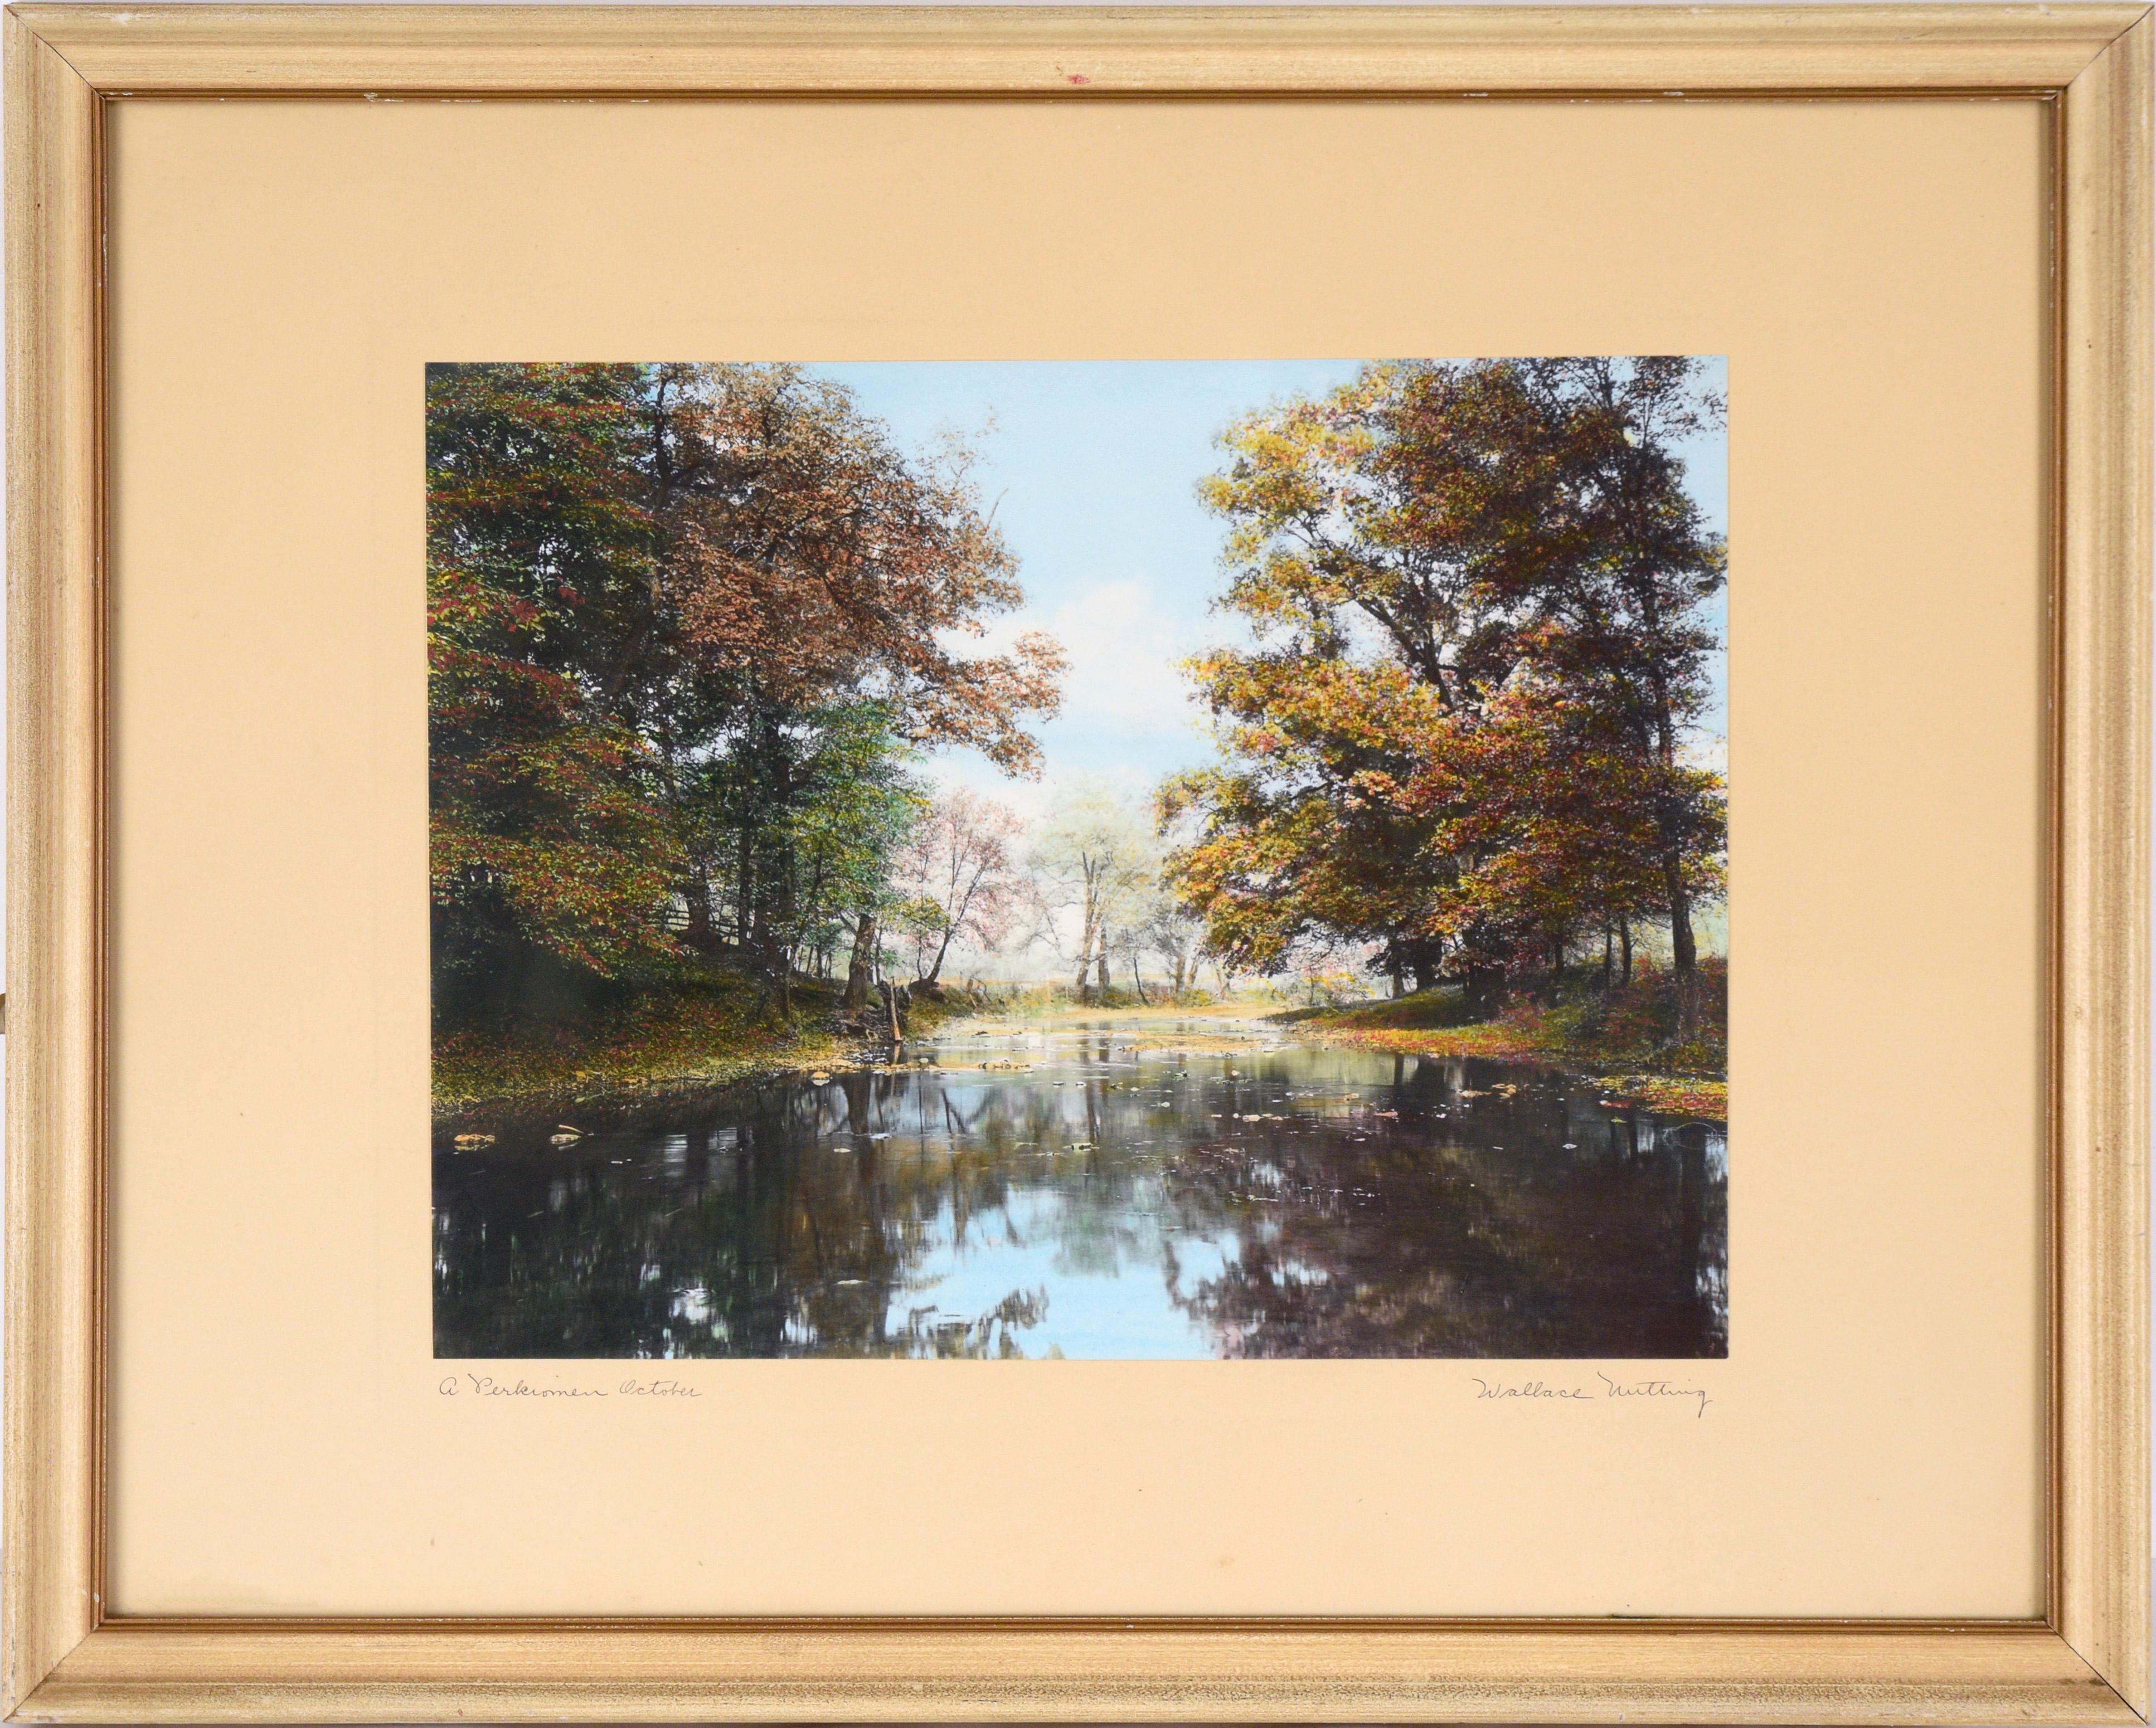 Landscape Photograph Wallace Nutting - Photographie colorée à la main « A Perkiomen October »